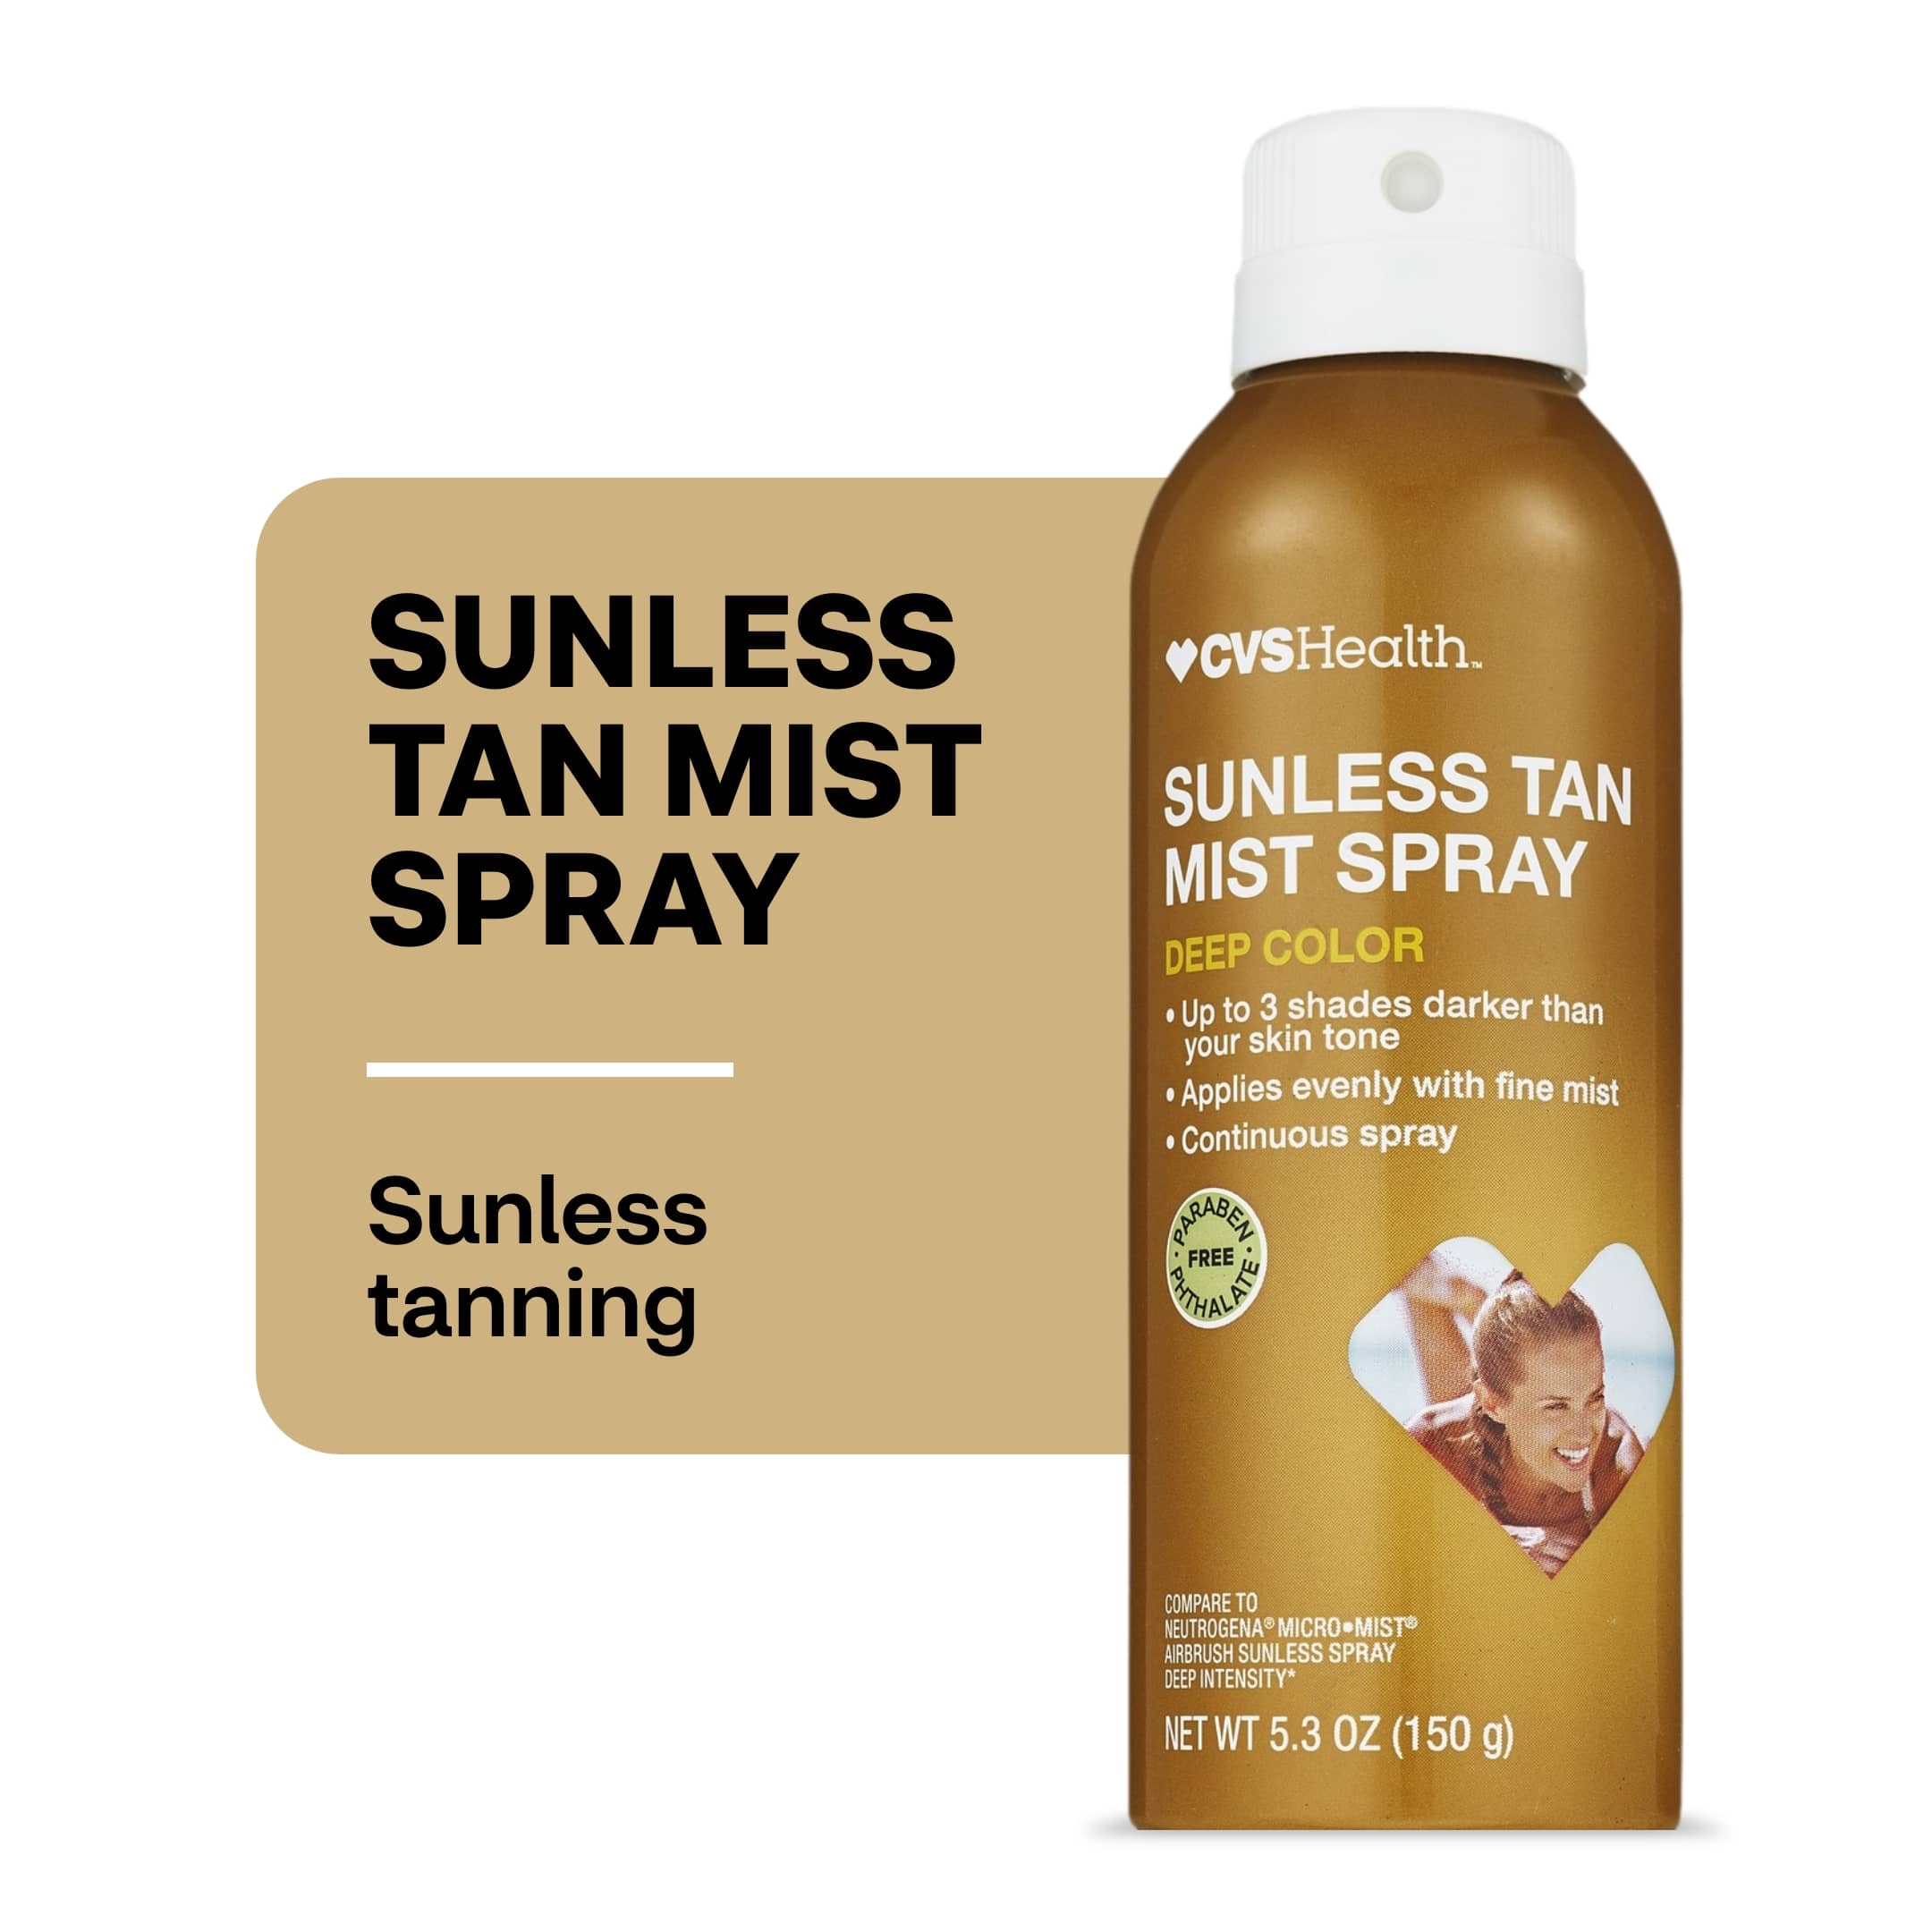 CVS Health Deep Color Sunless Tan Mist Spray, 5.3 OZ